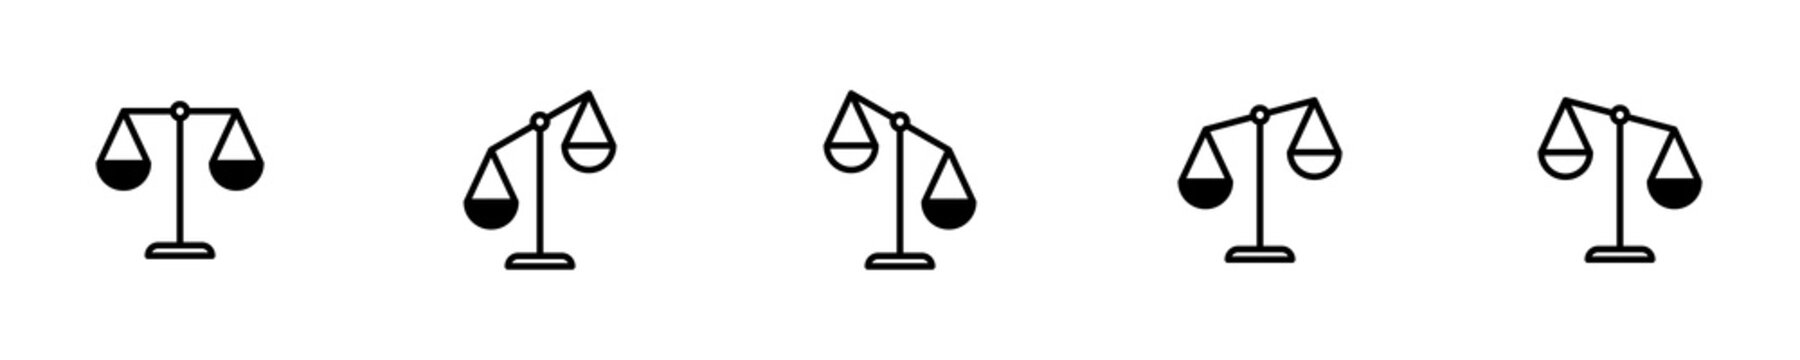 Conjunto de iconos de balanza. Concepto de justicia y peso. Ilustración vectorial aislada en fondo blanco